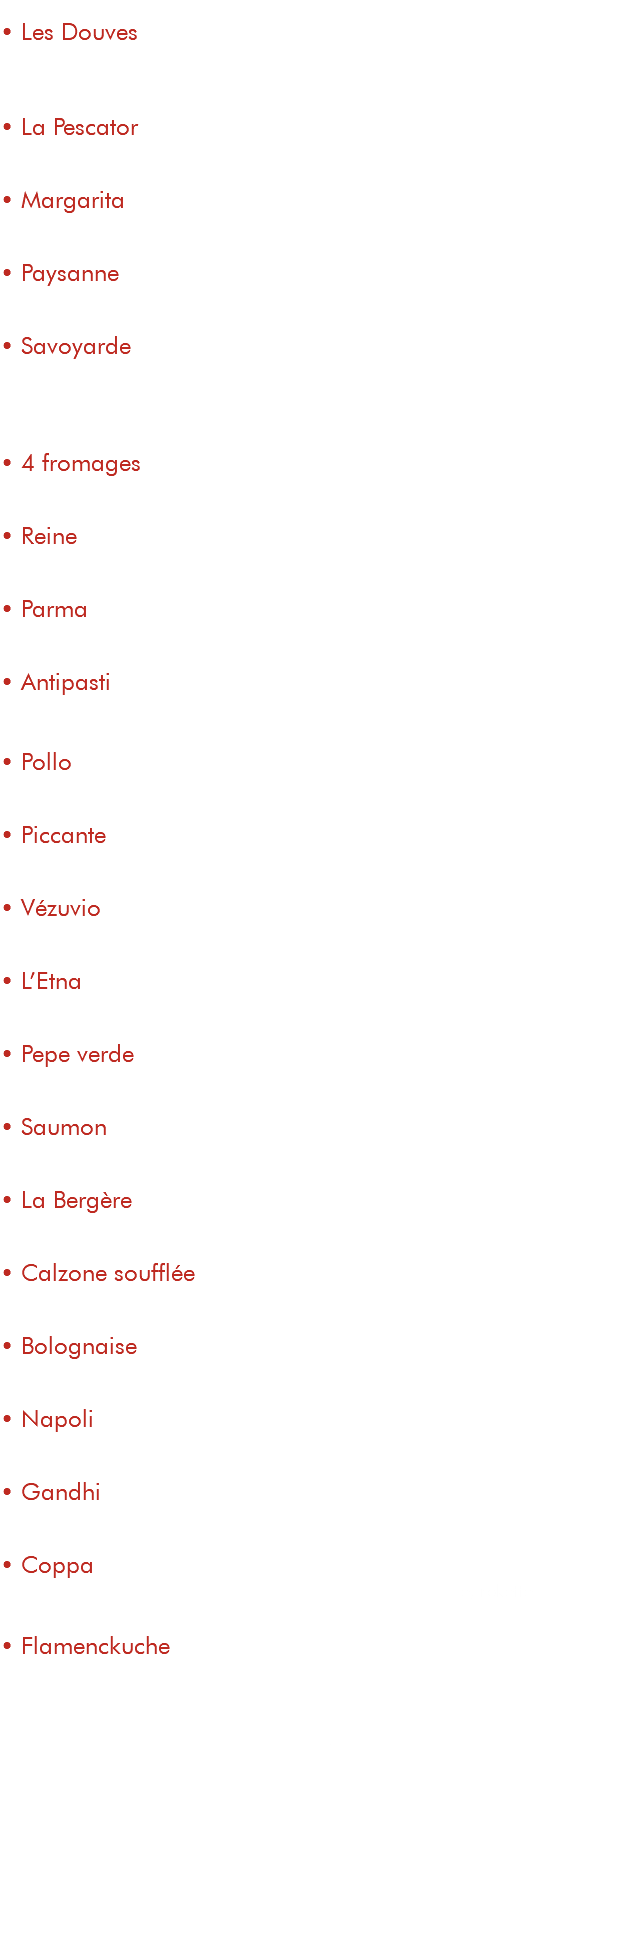  • Les Douves 15€ tomate, fromage, pommes de terre, magret fumé, jambon de parme, œuf • La Pescator 15€ tomate, fromage, thon, crème, persillade, champignons • Margarita 9,50€ tomate, fromage • Paysanne 13€ tomate, fromage, champignons, poitrine fumée • Savoyarde 15€ tomate, fromage, reblochon, pommes de terre, poitrine fumée, oignons • 4 fromages 15€ tomate, mozzarella, chèvre, gorgonzola, parmesan • Reine 13€ tomate, fromage, jambon, champignons, œuf • Parma 14€ tomate, fromage, jambon de parme, parmesan • Antipasti 15€ tomate, fromage, courgettes, aubergines, poivrons grillés • Pollo 14,50€ tomate, fromage, poulet, champignons, crème, persillade • Piccante 15,50€ tomate, fromage, merguez, chorizo, spianata, poivrons • Vézuvio 13,50€ tomate, fromage, merguez, oignons, crème • L’Etna 14,50€ tomate, fromage, merguez, chorizo, champignons, poivrons • Pepe verde 14€ tomate, fromage, lardons, poivrons, poivre vert • Saumon 16€ tomate, fromage, saumon fumé, crème, persillade • La Bergère 14€ tomate, fromage, chèvre, miel, poitrine fumée • Calzone soufflée 14€ tomate, fromage, jambon, champignons, crème • Bolognaise 15€ tomate, fromage, viande de bœuf hachée, poivrons, oignons • Napoli 15€ tomate, fromage, câpres, anchois, olives noires • Gandhi 14,50€ tomate, fromage, poulet tandoori, crème curry, poivrons, crème • Coppa 15€ tomate, fromage,coppa, crème à la ricotta, tomatescerise, rokette • Flamenckuche 14€ base crème, fromage, lardons, oignons, emmental suppléments ingrédients : viande : 1,50€ légumes : 1€ fromage : 1,50€ saumon fumé : 2,50€ antipasti de légumes : 3€ crème / persillade : 1€ œuf : 1€ roquette : 1€ 